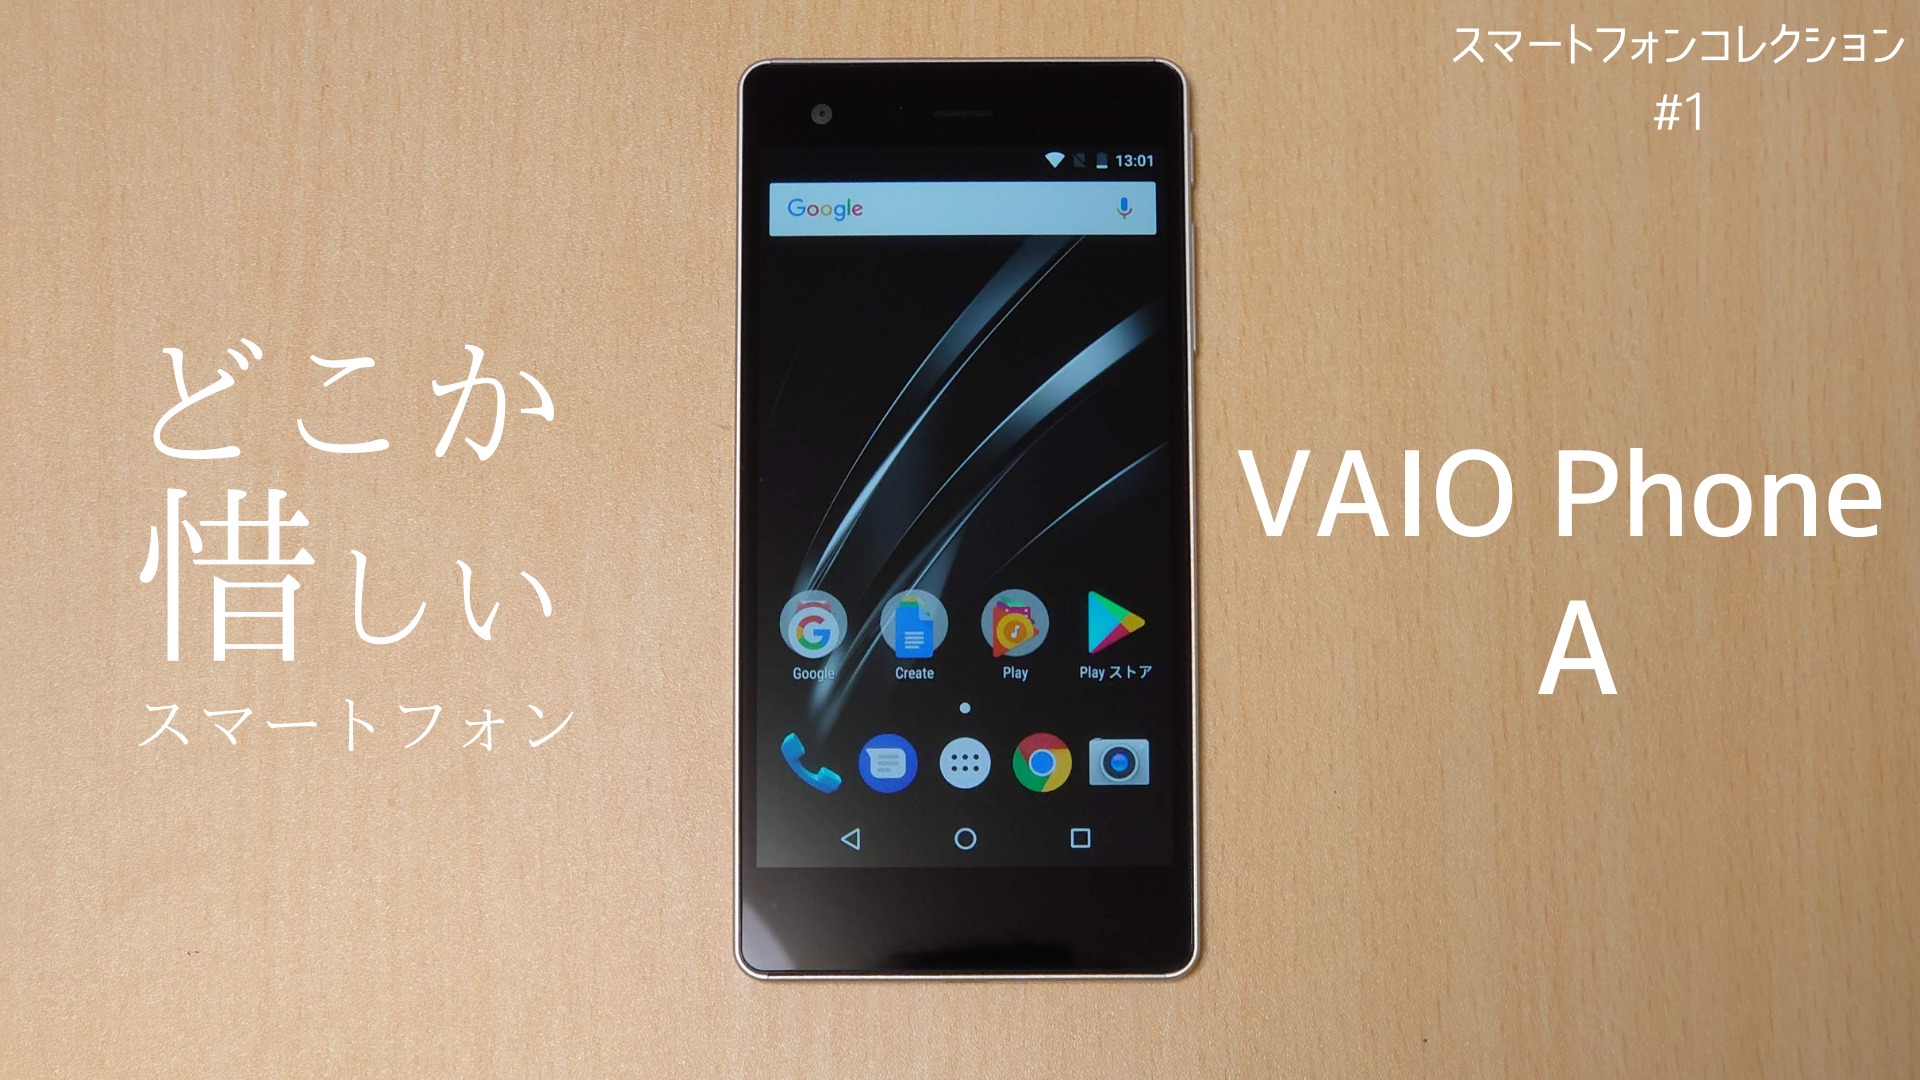 どこか 惜しい スマートフォン Vaio Phone A レビュー スマートフォンコレクション 1